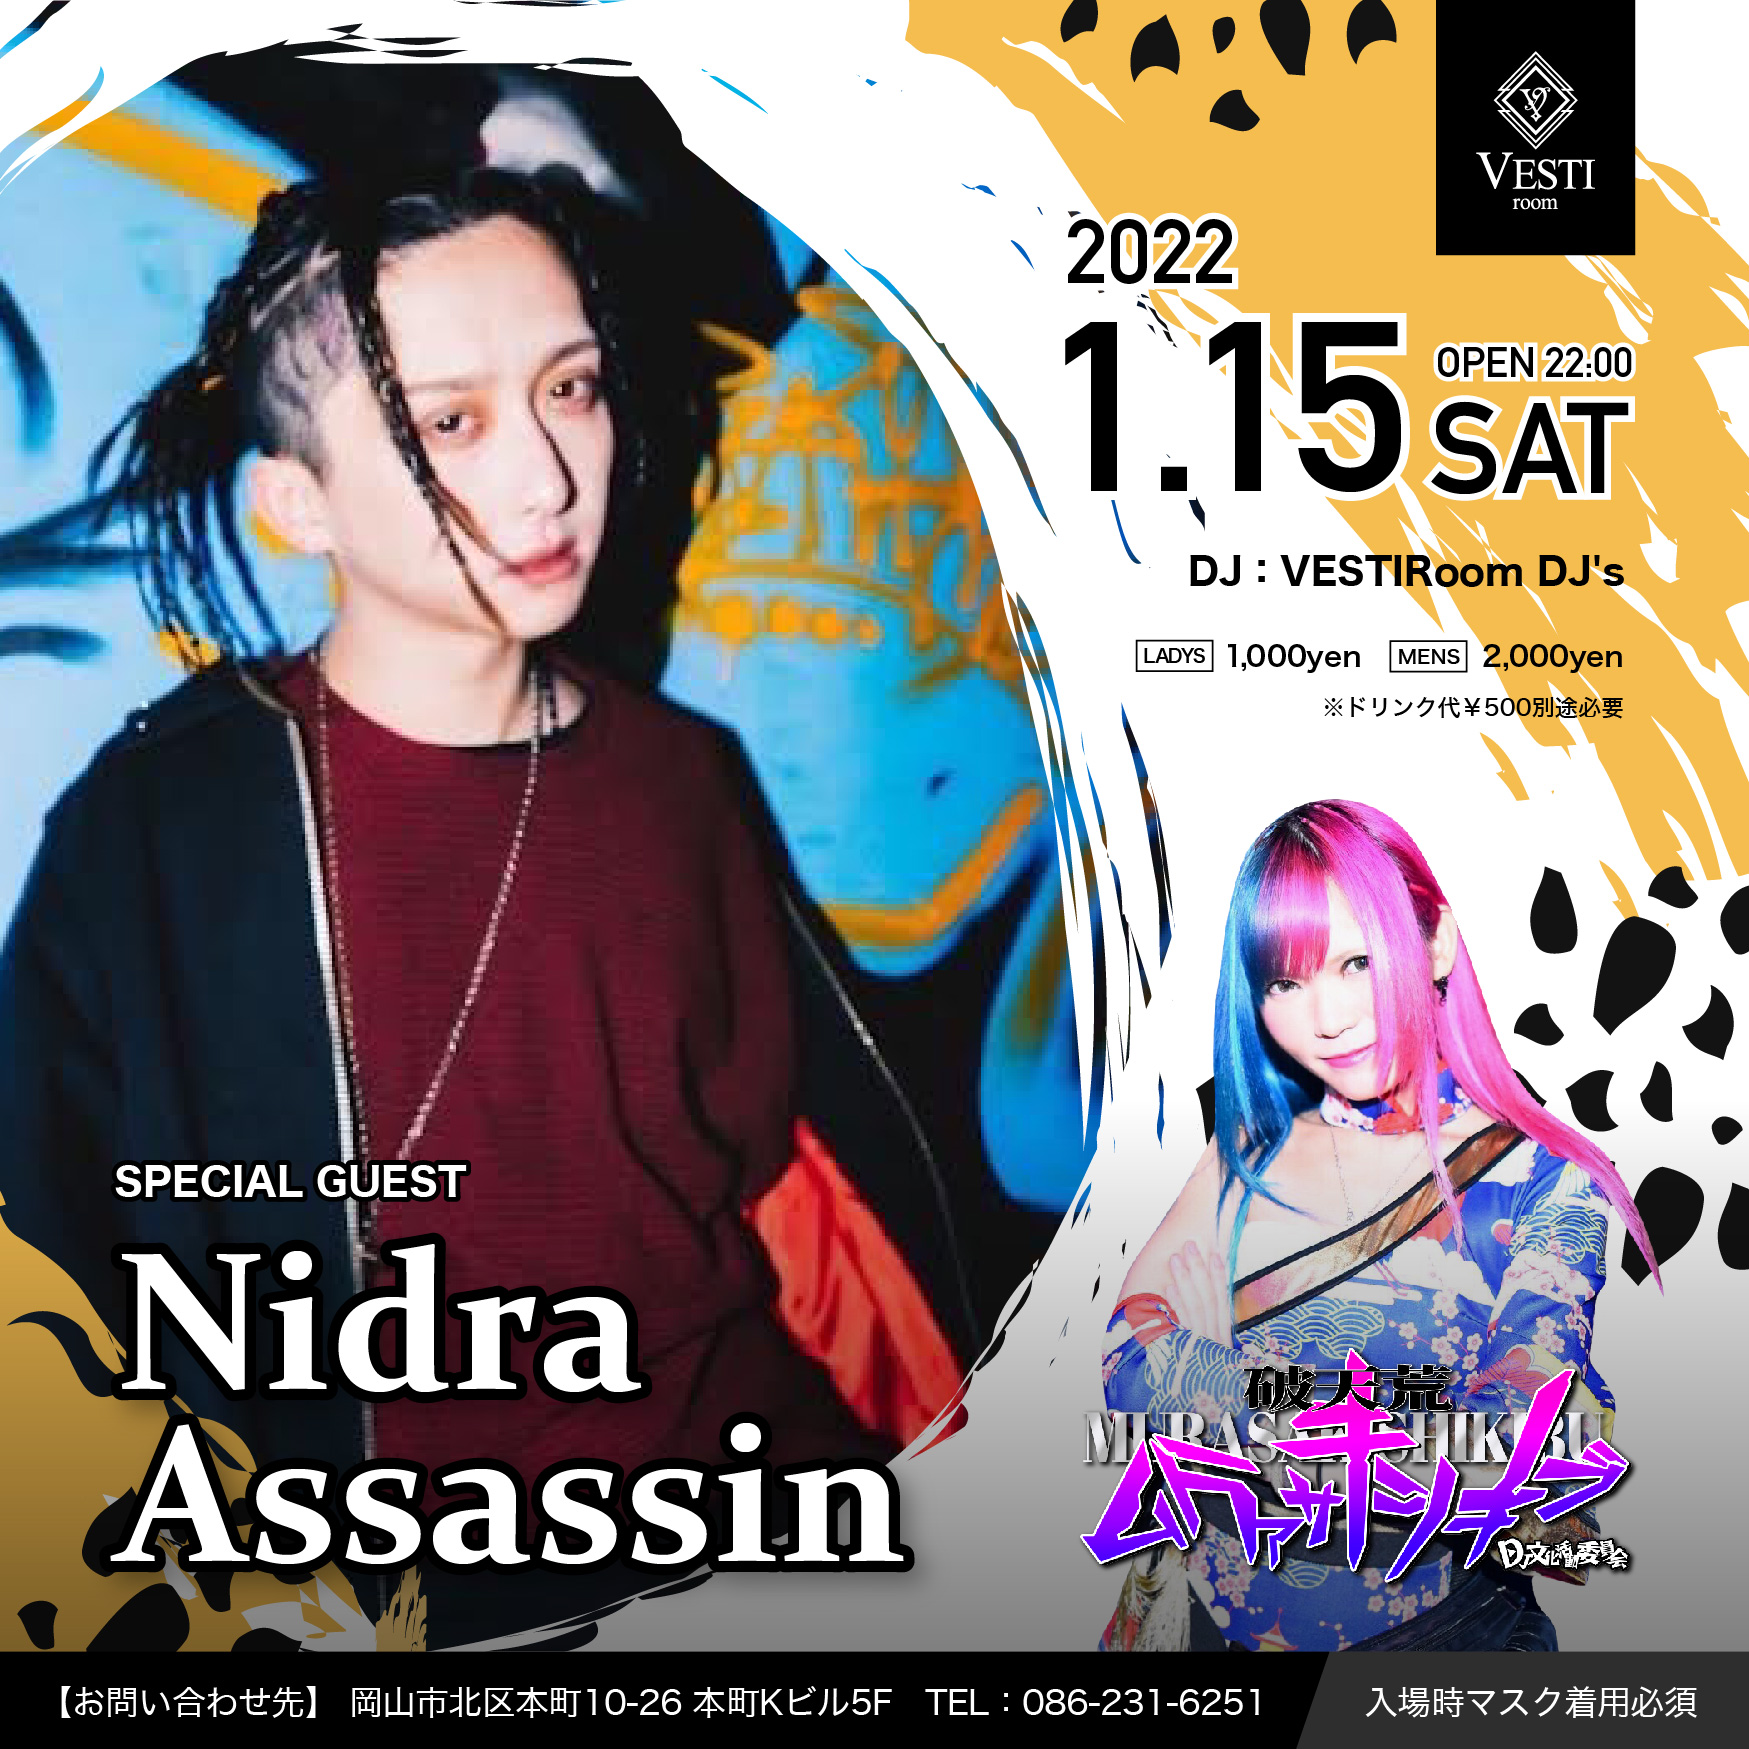 SPECIAL GUEST : Nidra Assassin / DJ紫式部